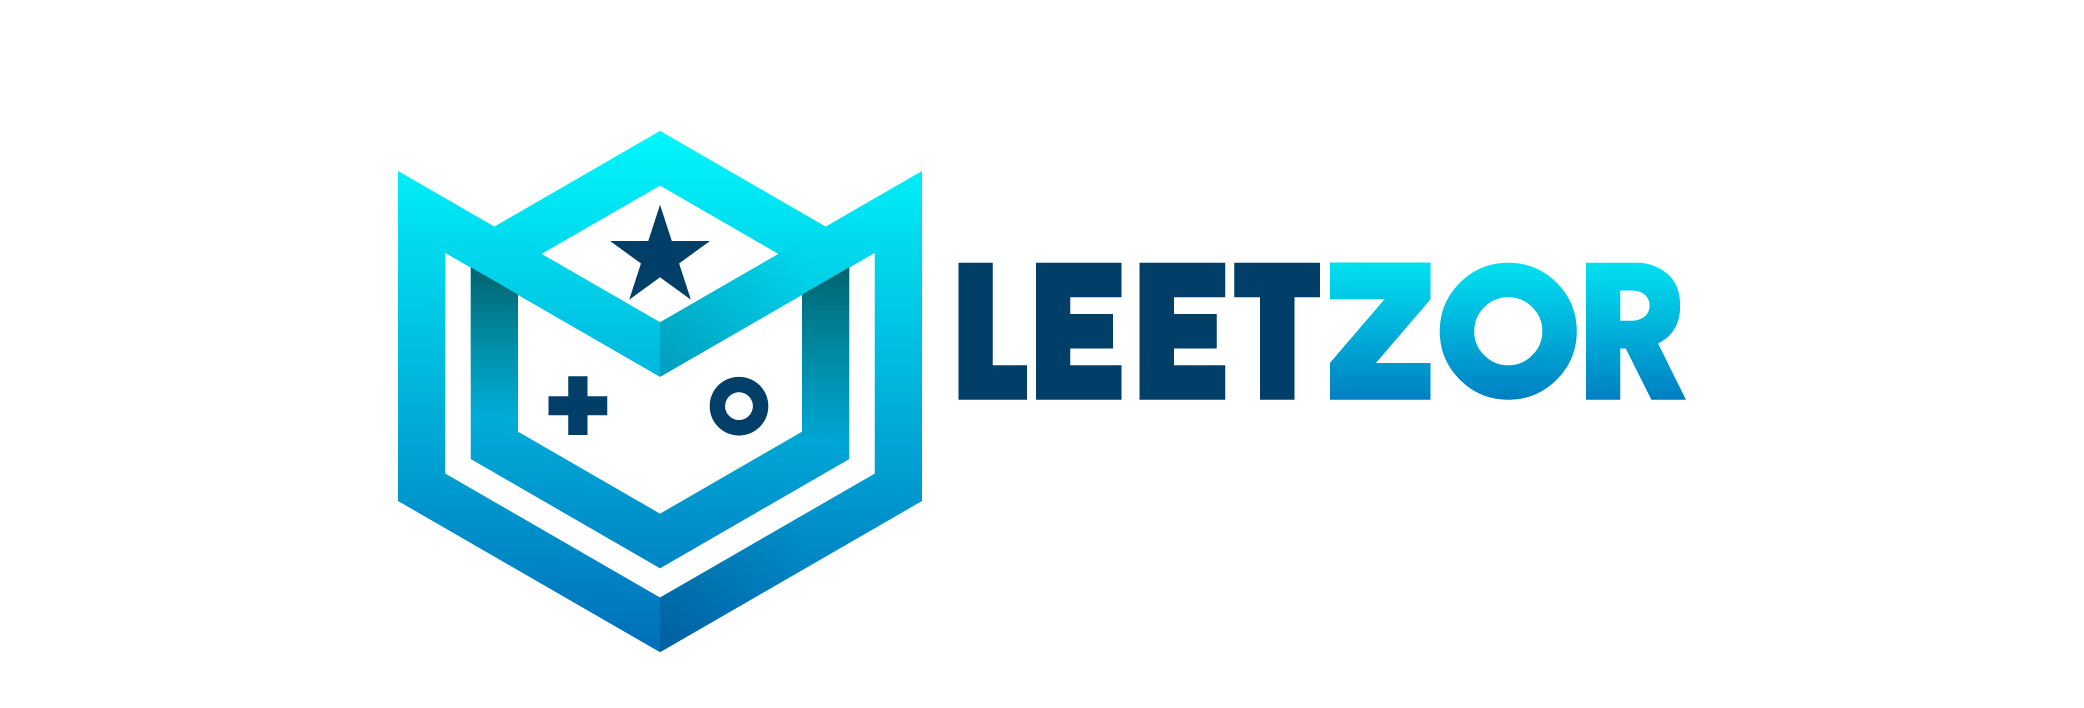 LeetZor